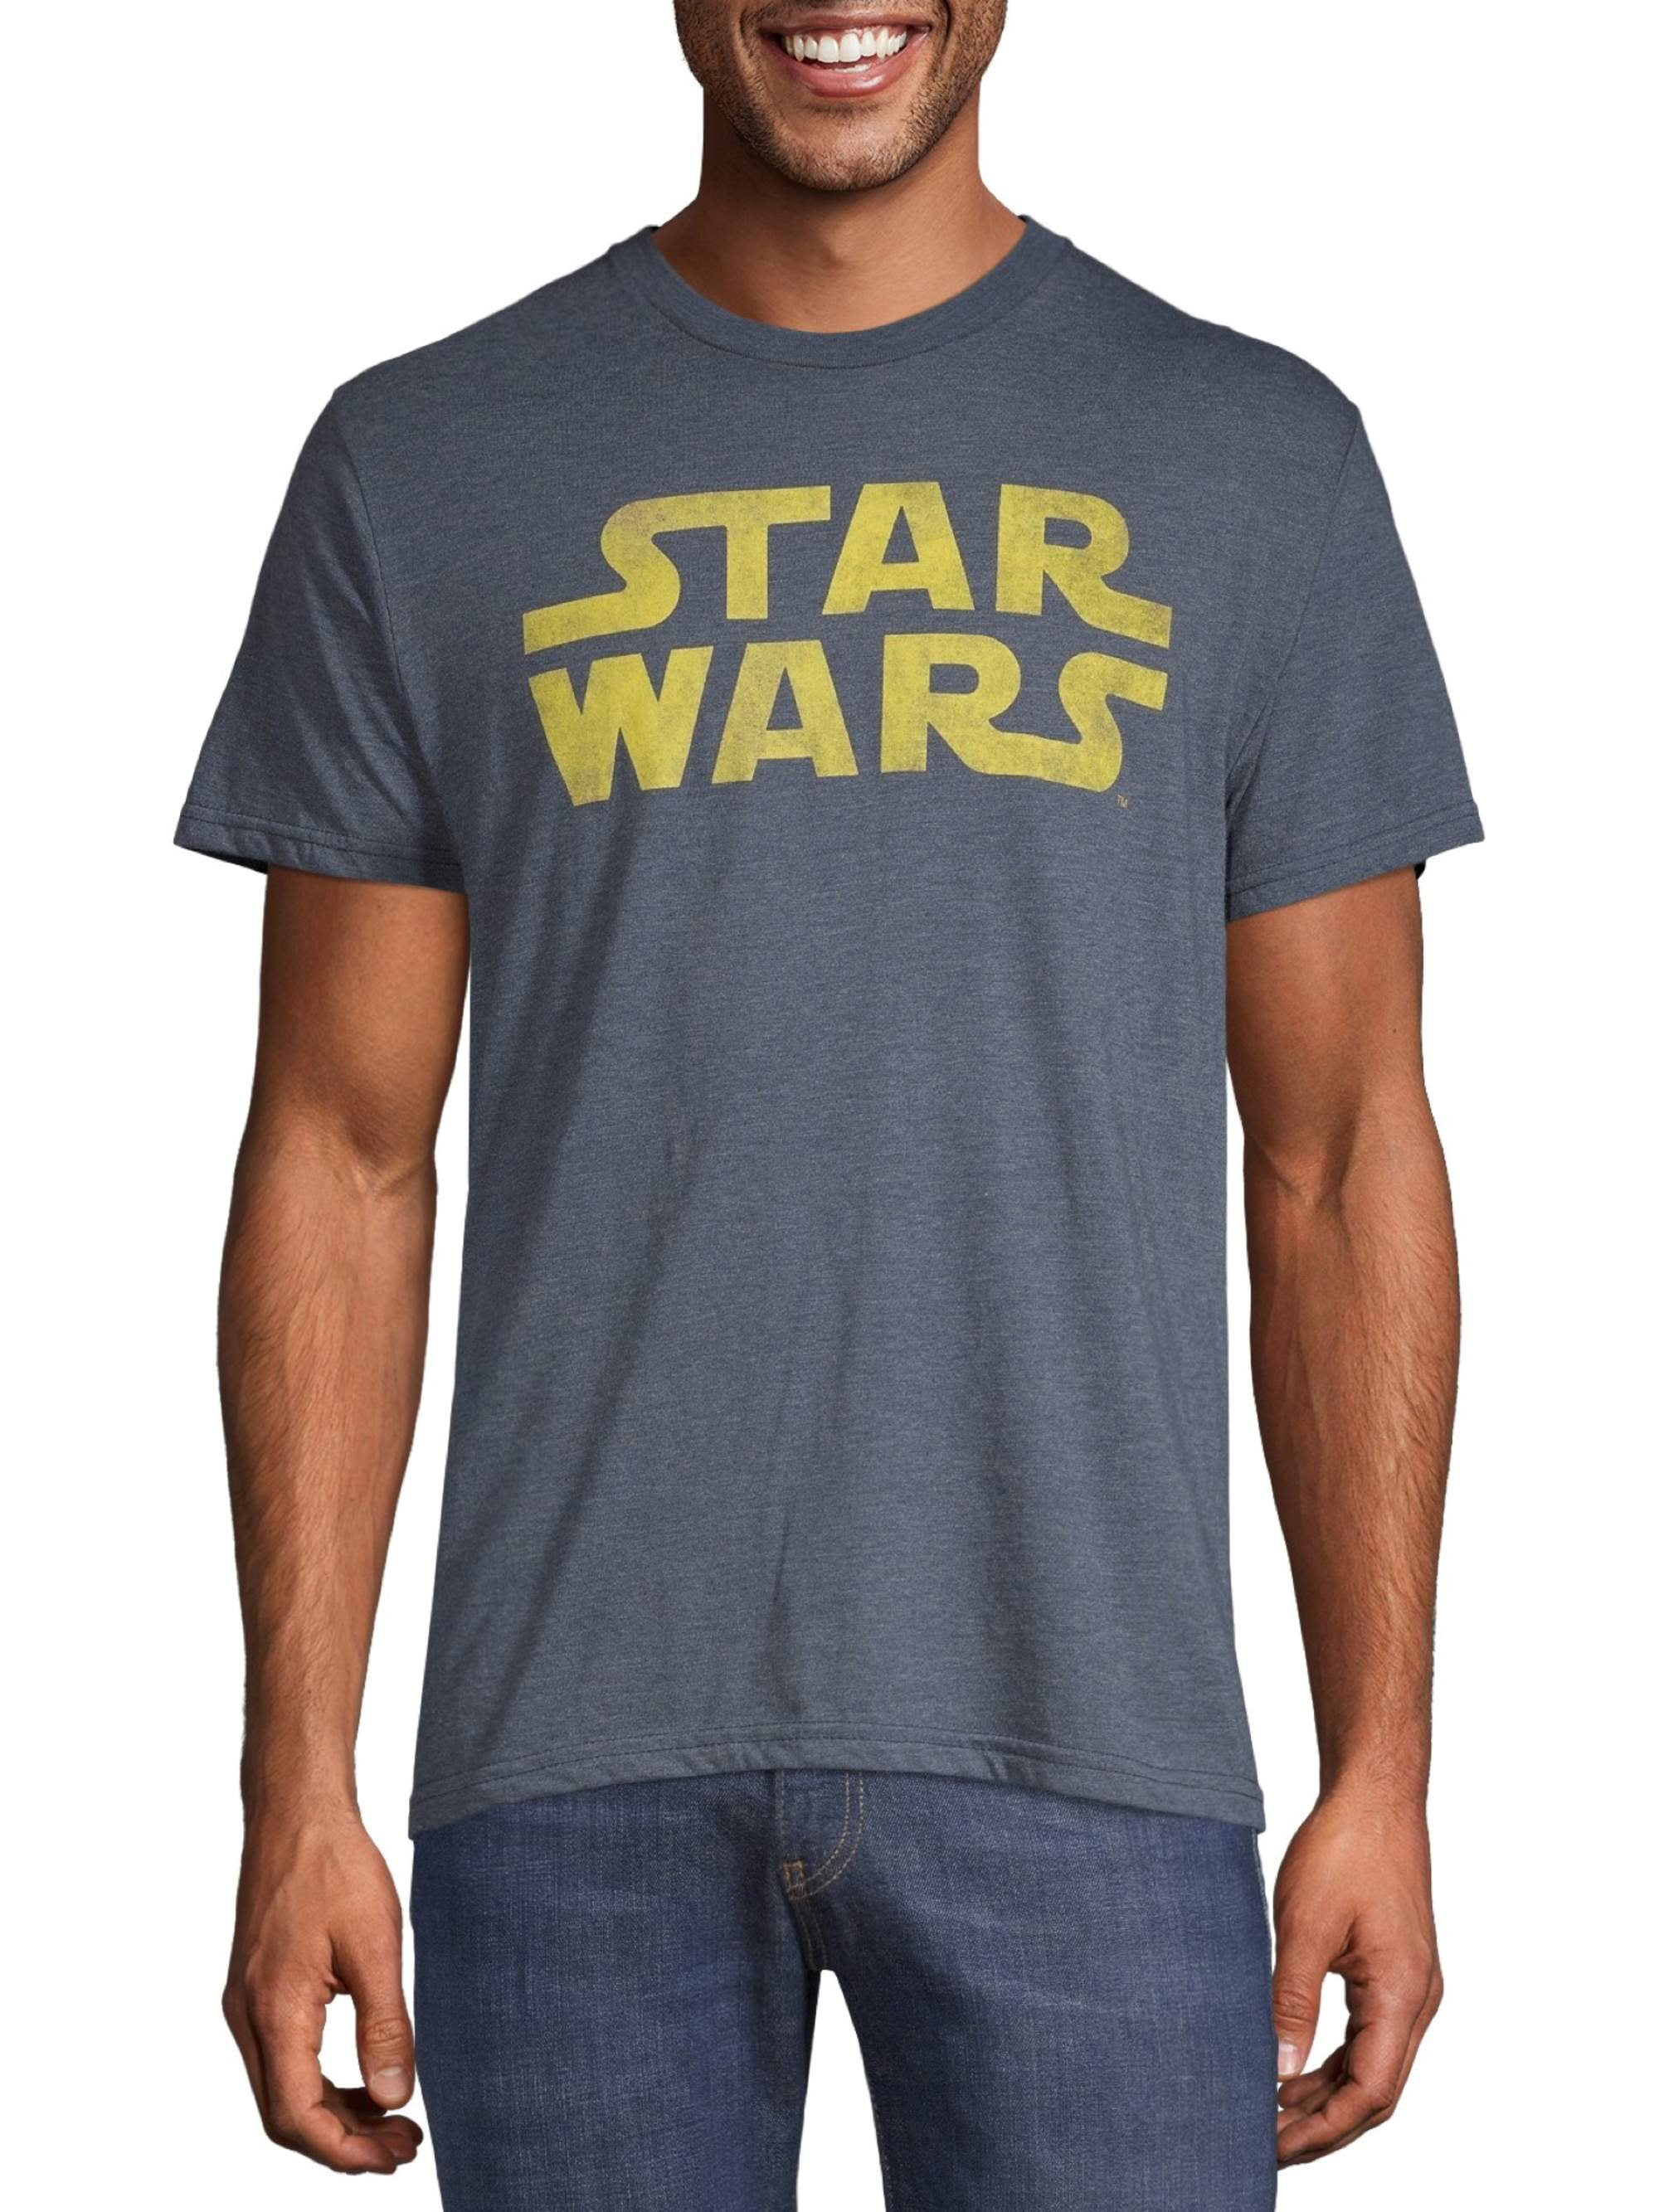 Star Wars Men's and Big Men's Graphic T-Shirt - Walmart.com